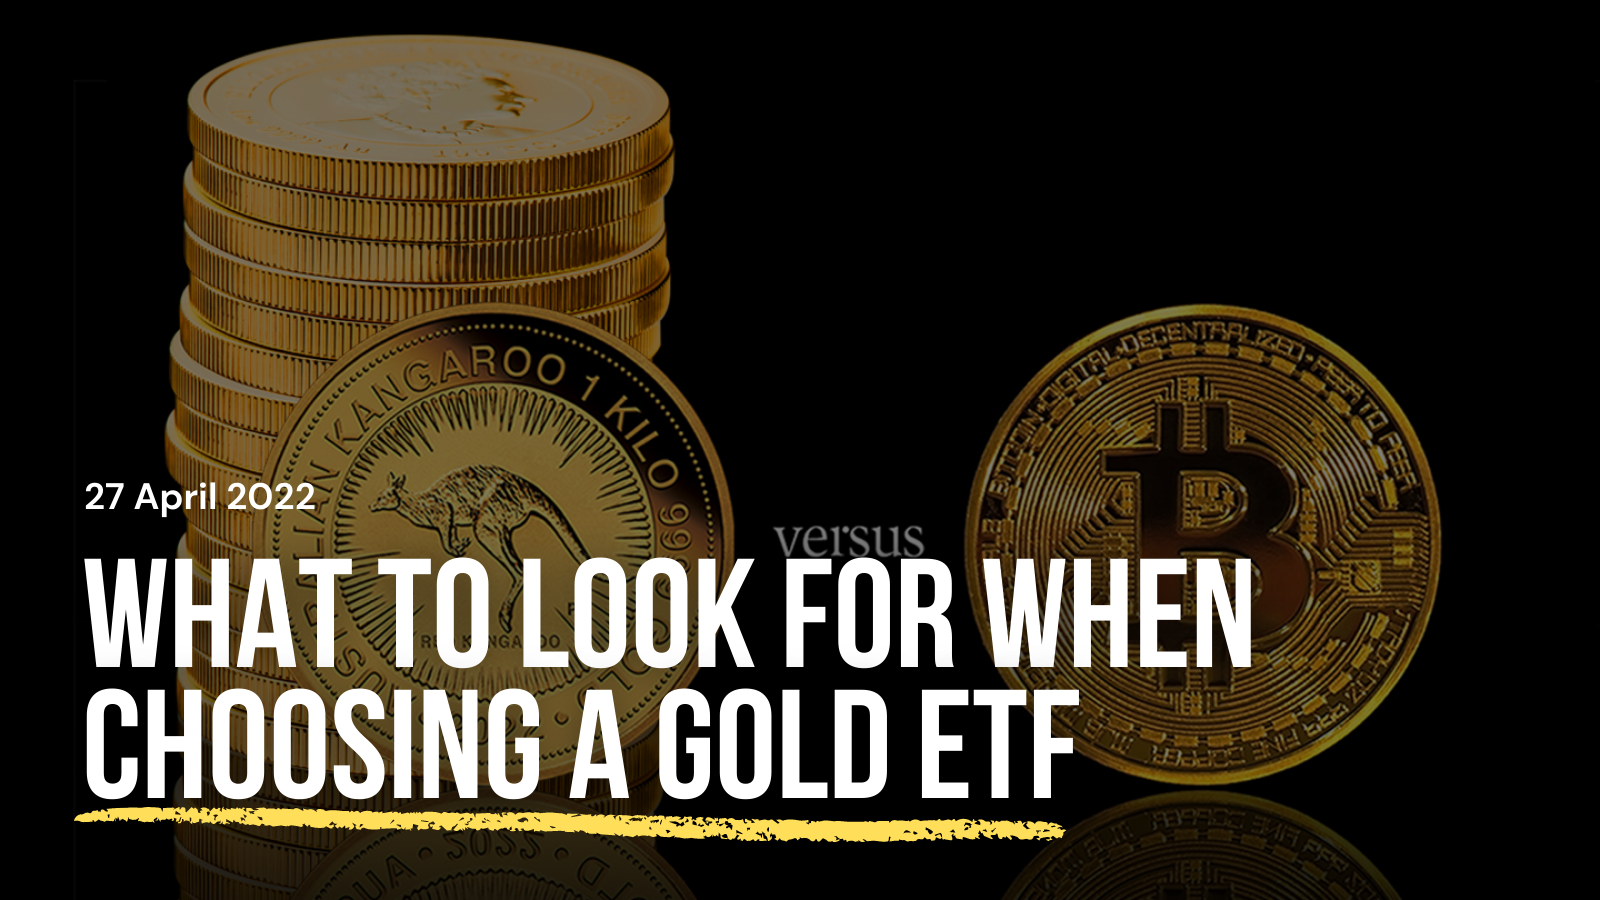 80. choosing a gold etf